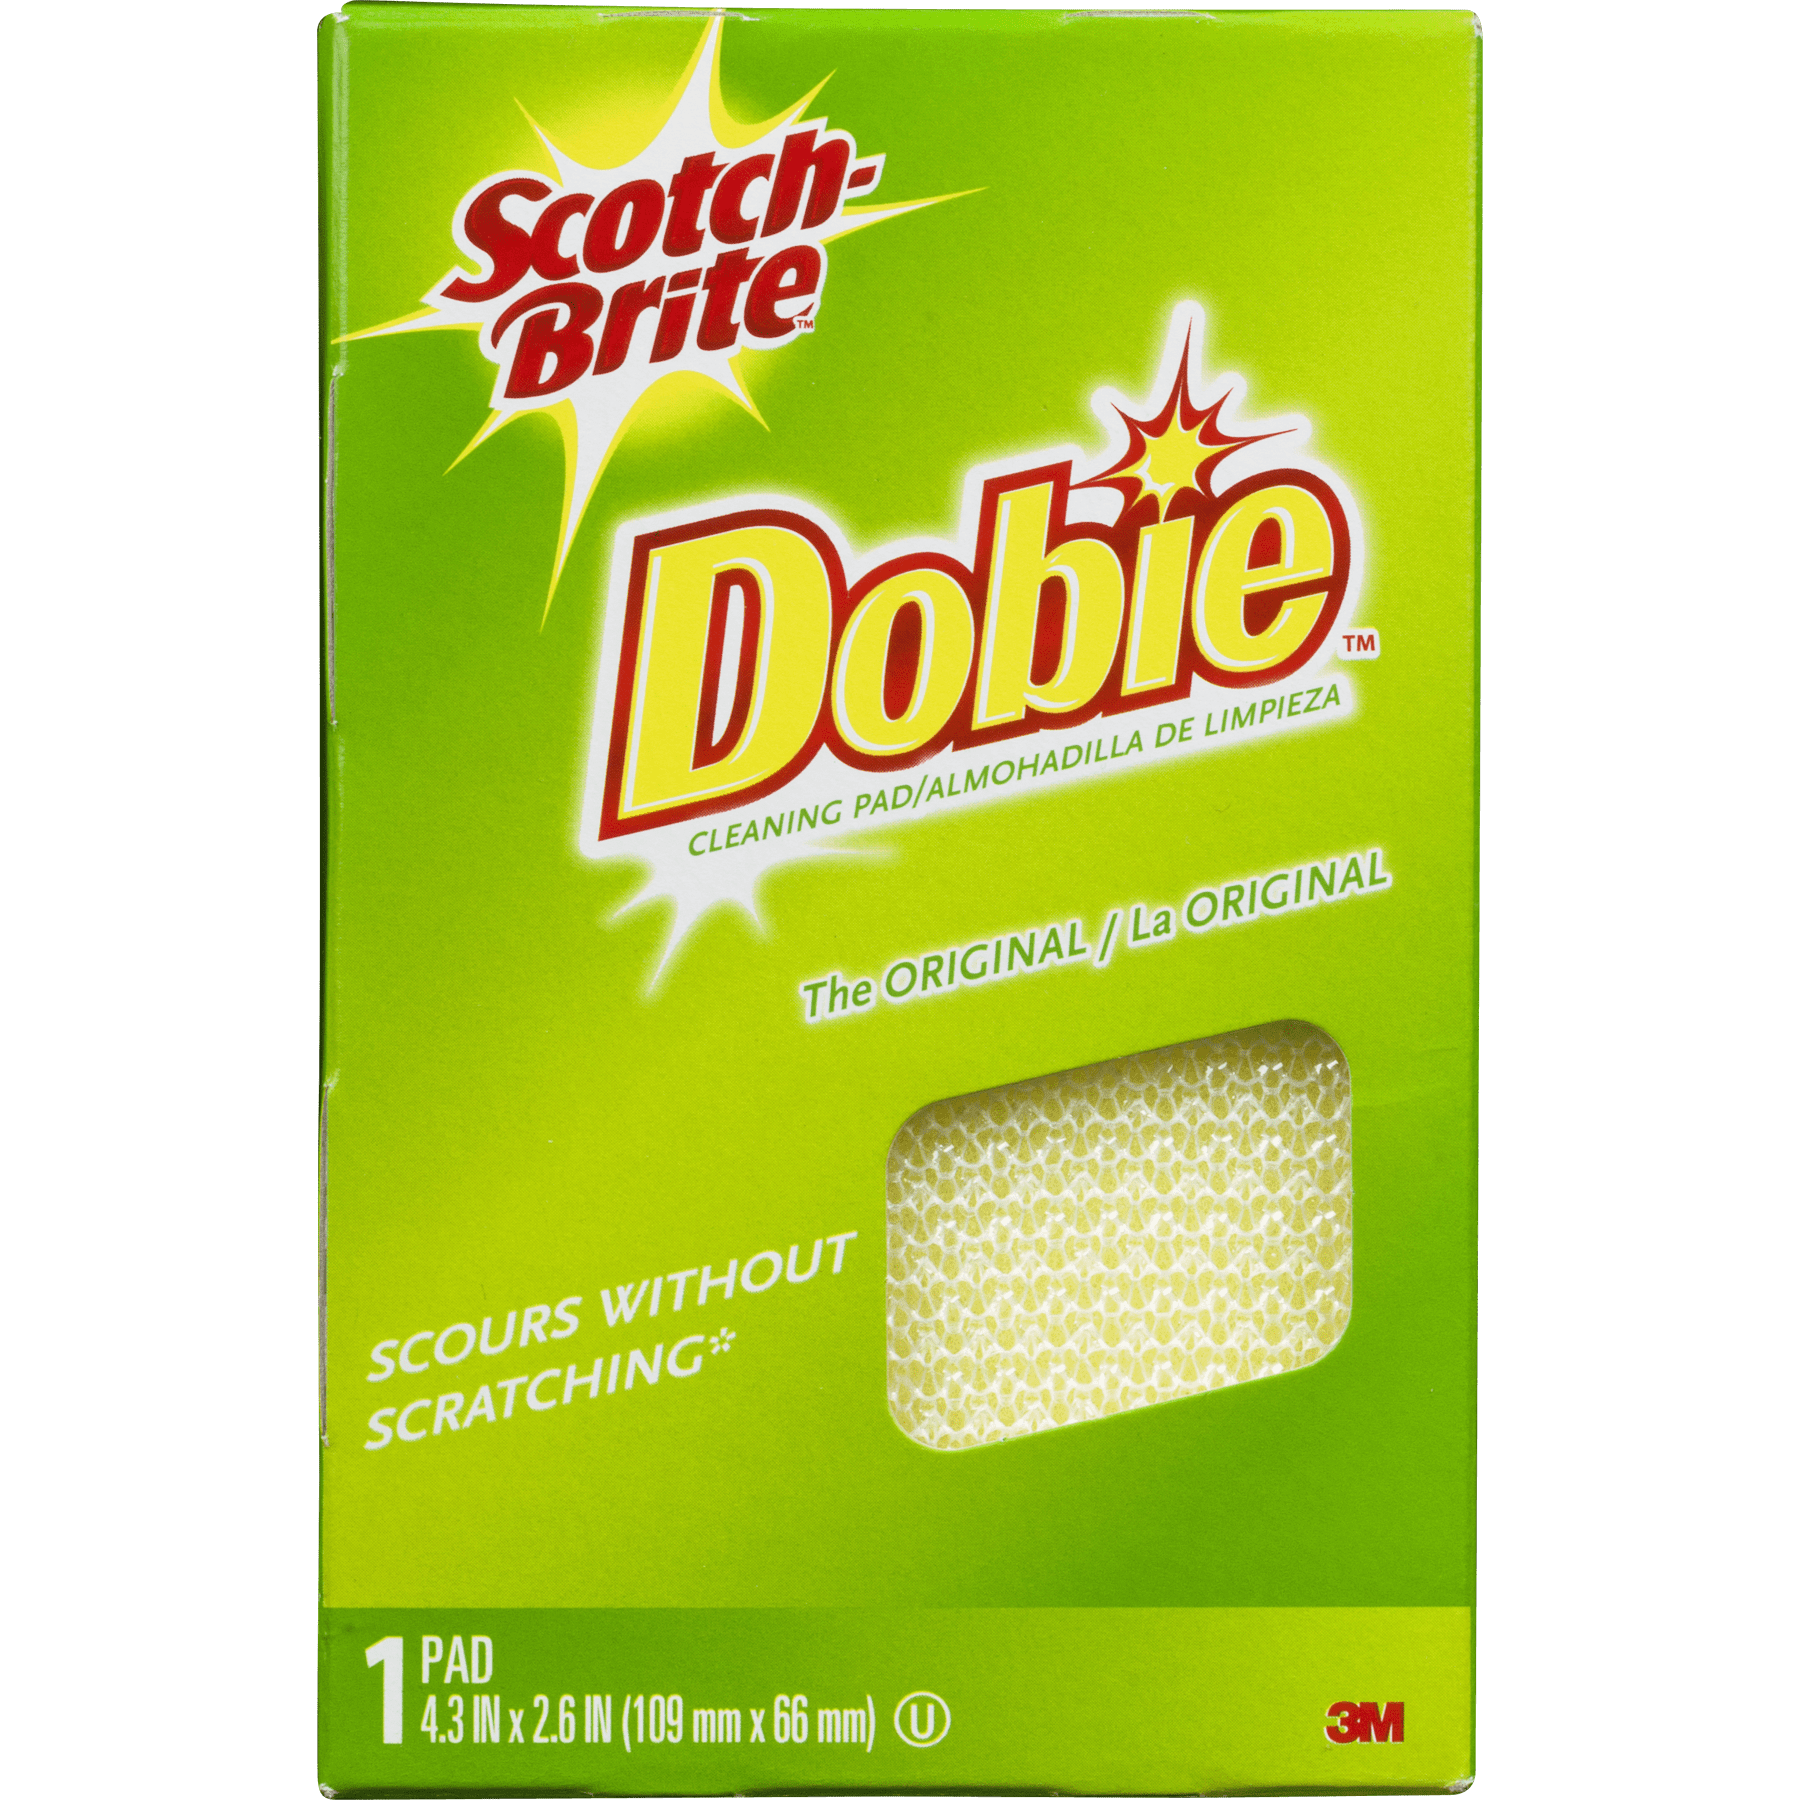 Scotch-Brite Dobie Pad 720 Scour No Scratch All Surface Original Cleaning 24 PK 